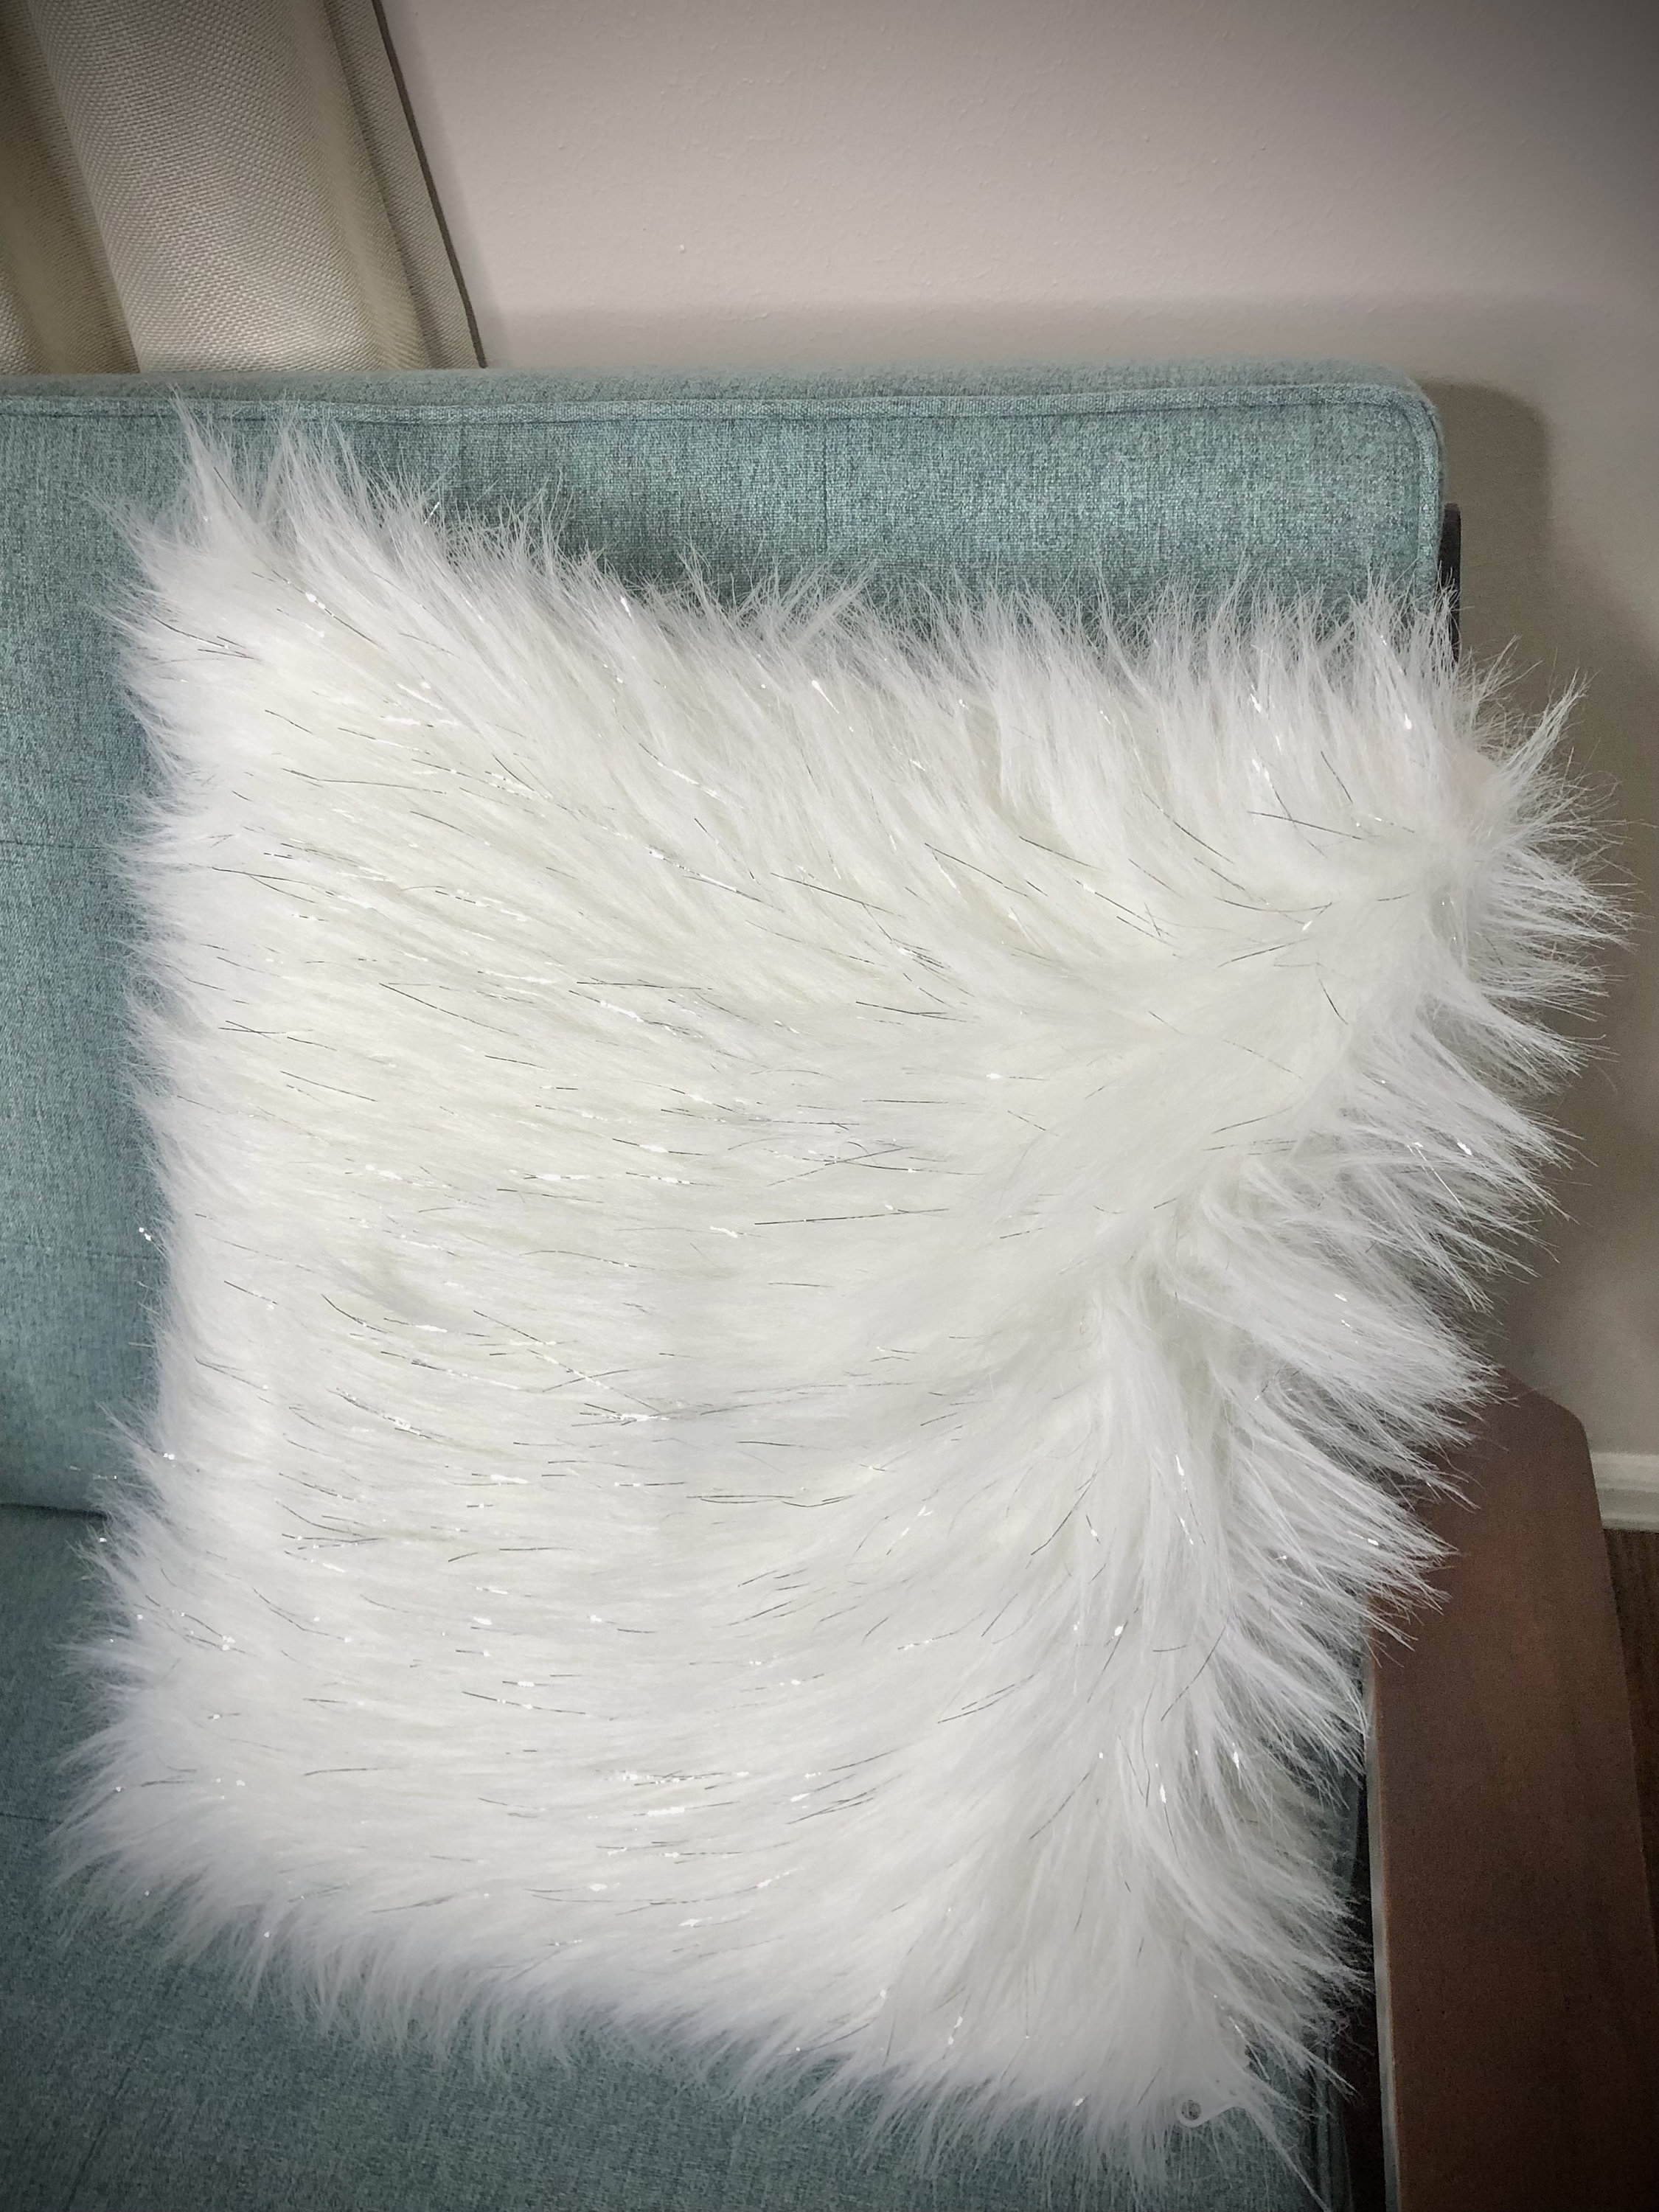 Sugar Vegan Washable Cozy Haze Tan Faux Fur Decorative Lumbar Pillow, Decorative  Pillows